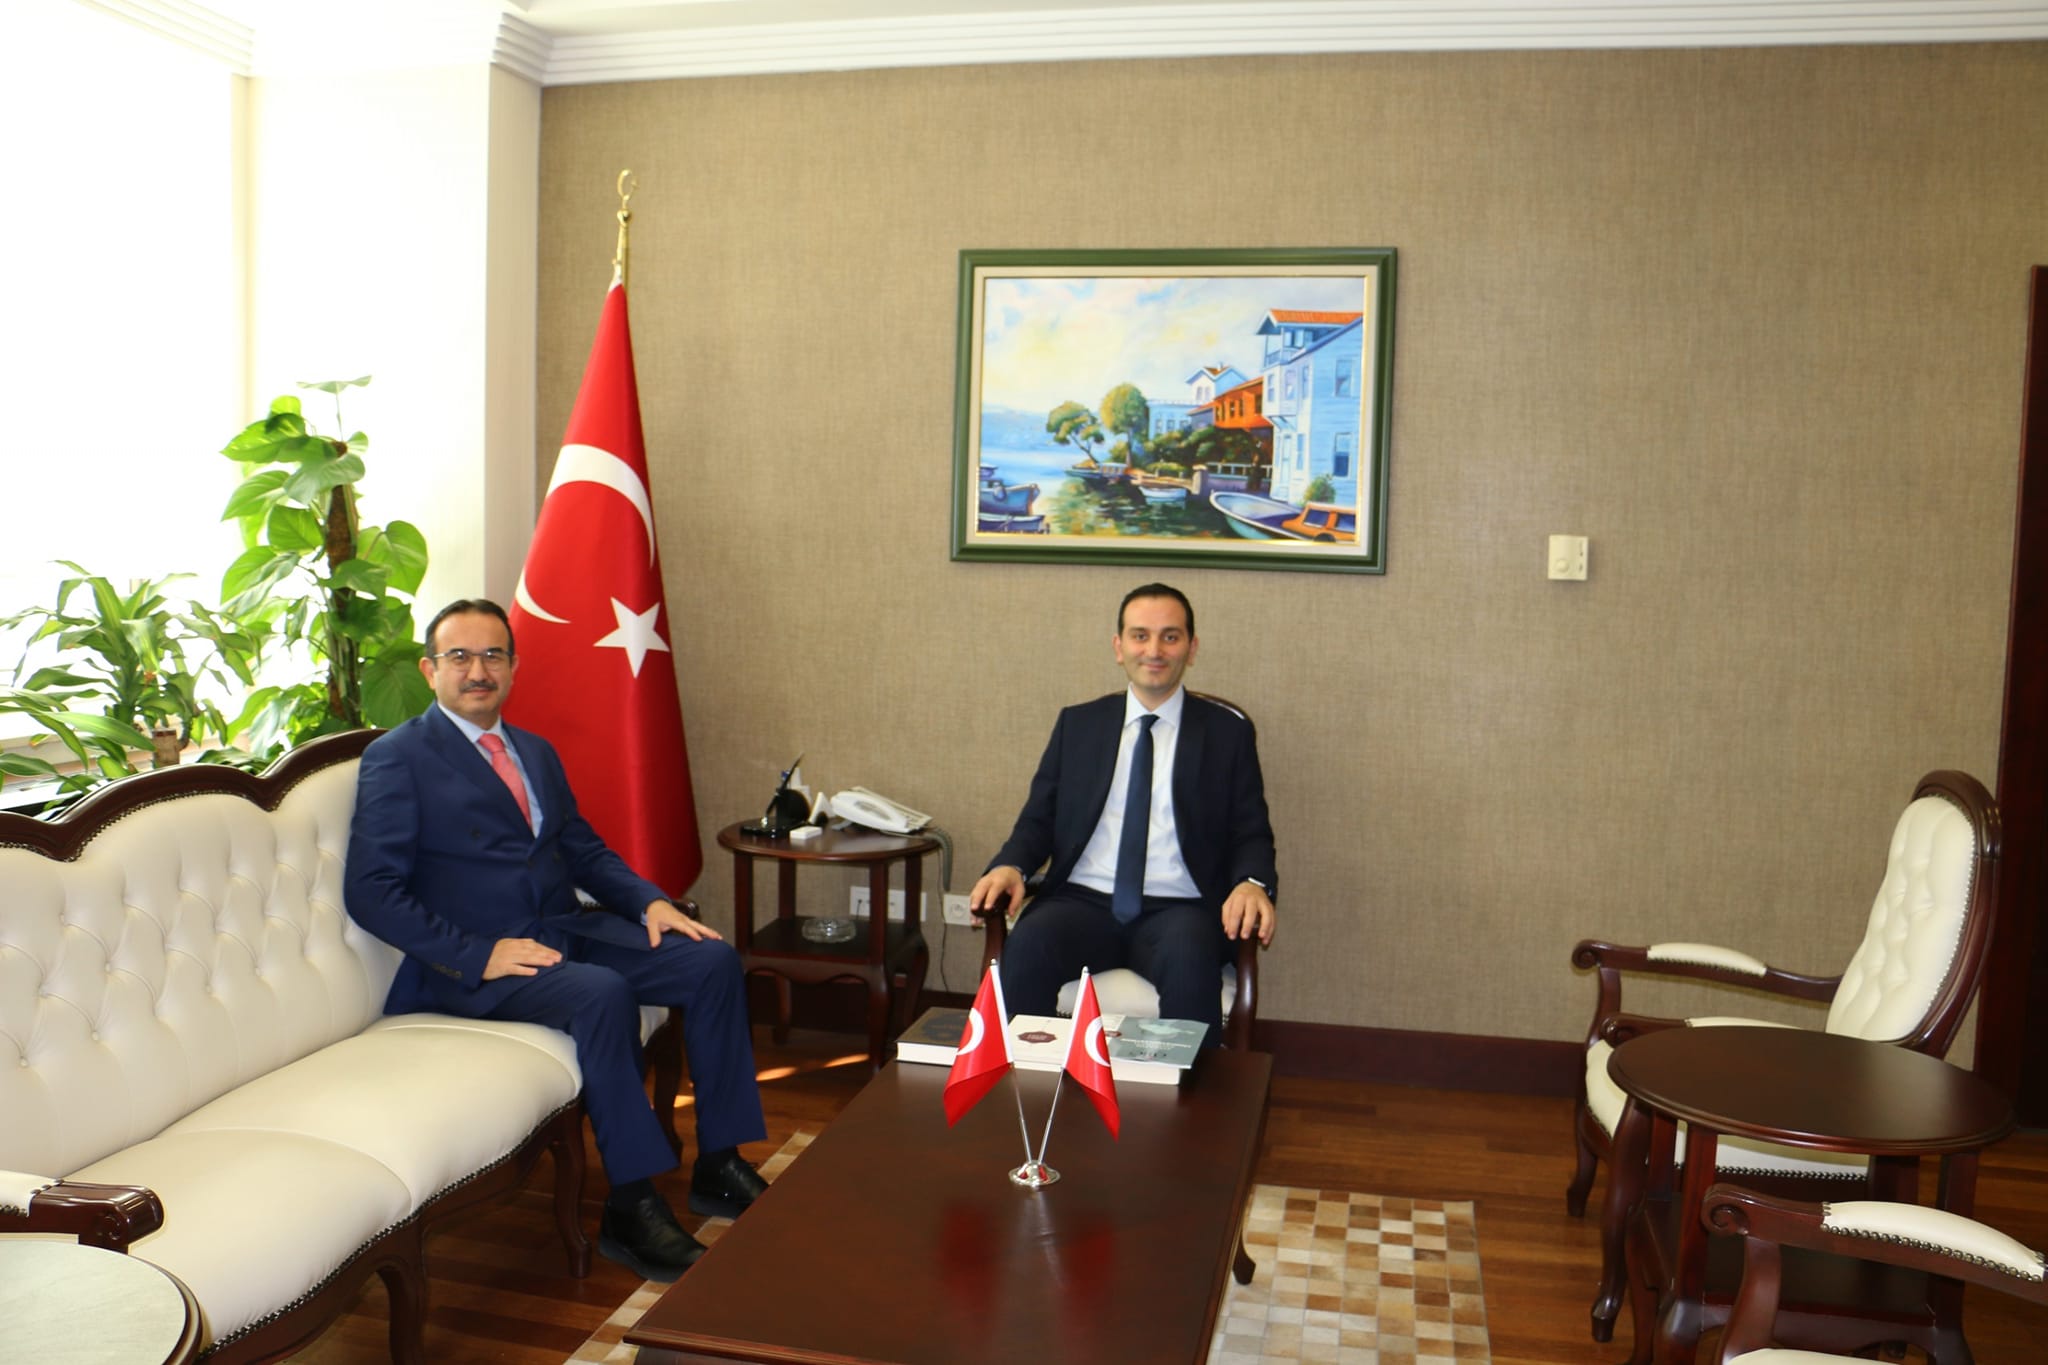 Antalya İl Müftüsü Nazif Fethi Yalçınkaya, Cumhuriyet Başsavcısı Yakup Ali Kahveci'yi Ziyaret Etti